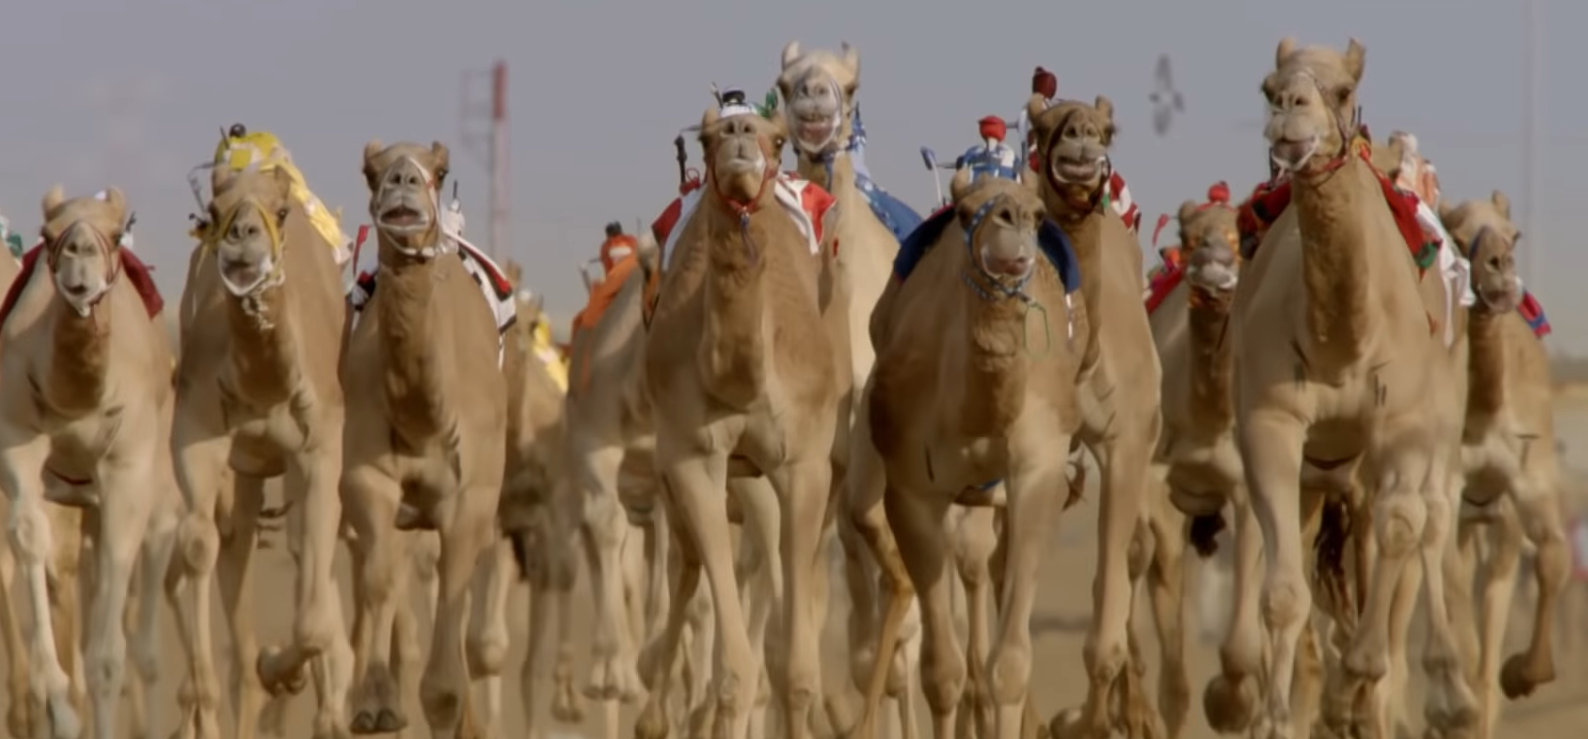 Музей верблюда в Дубае - Верблюжьи скачки